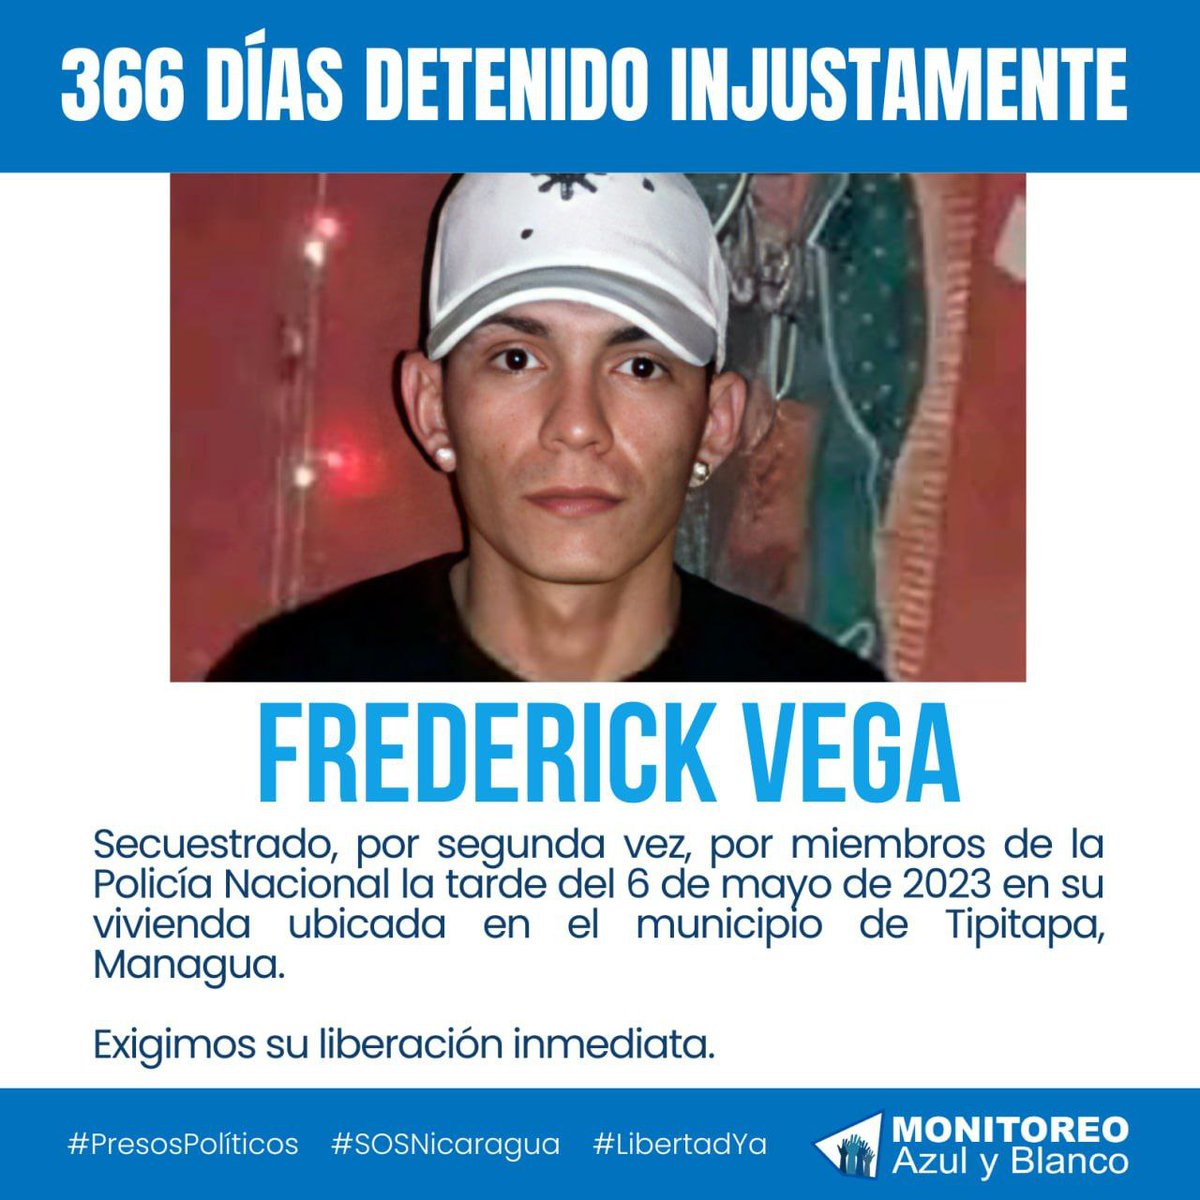 Exigimos la liberación del preso político Frederick Humberto Vega Gonzalez, quien cumple un año de ser injustamente detenido.
#SOSNicaragua
#LibertadYa
#PresosPoliticos